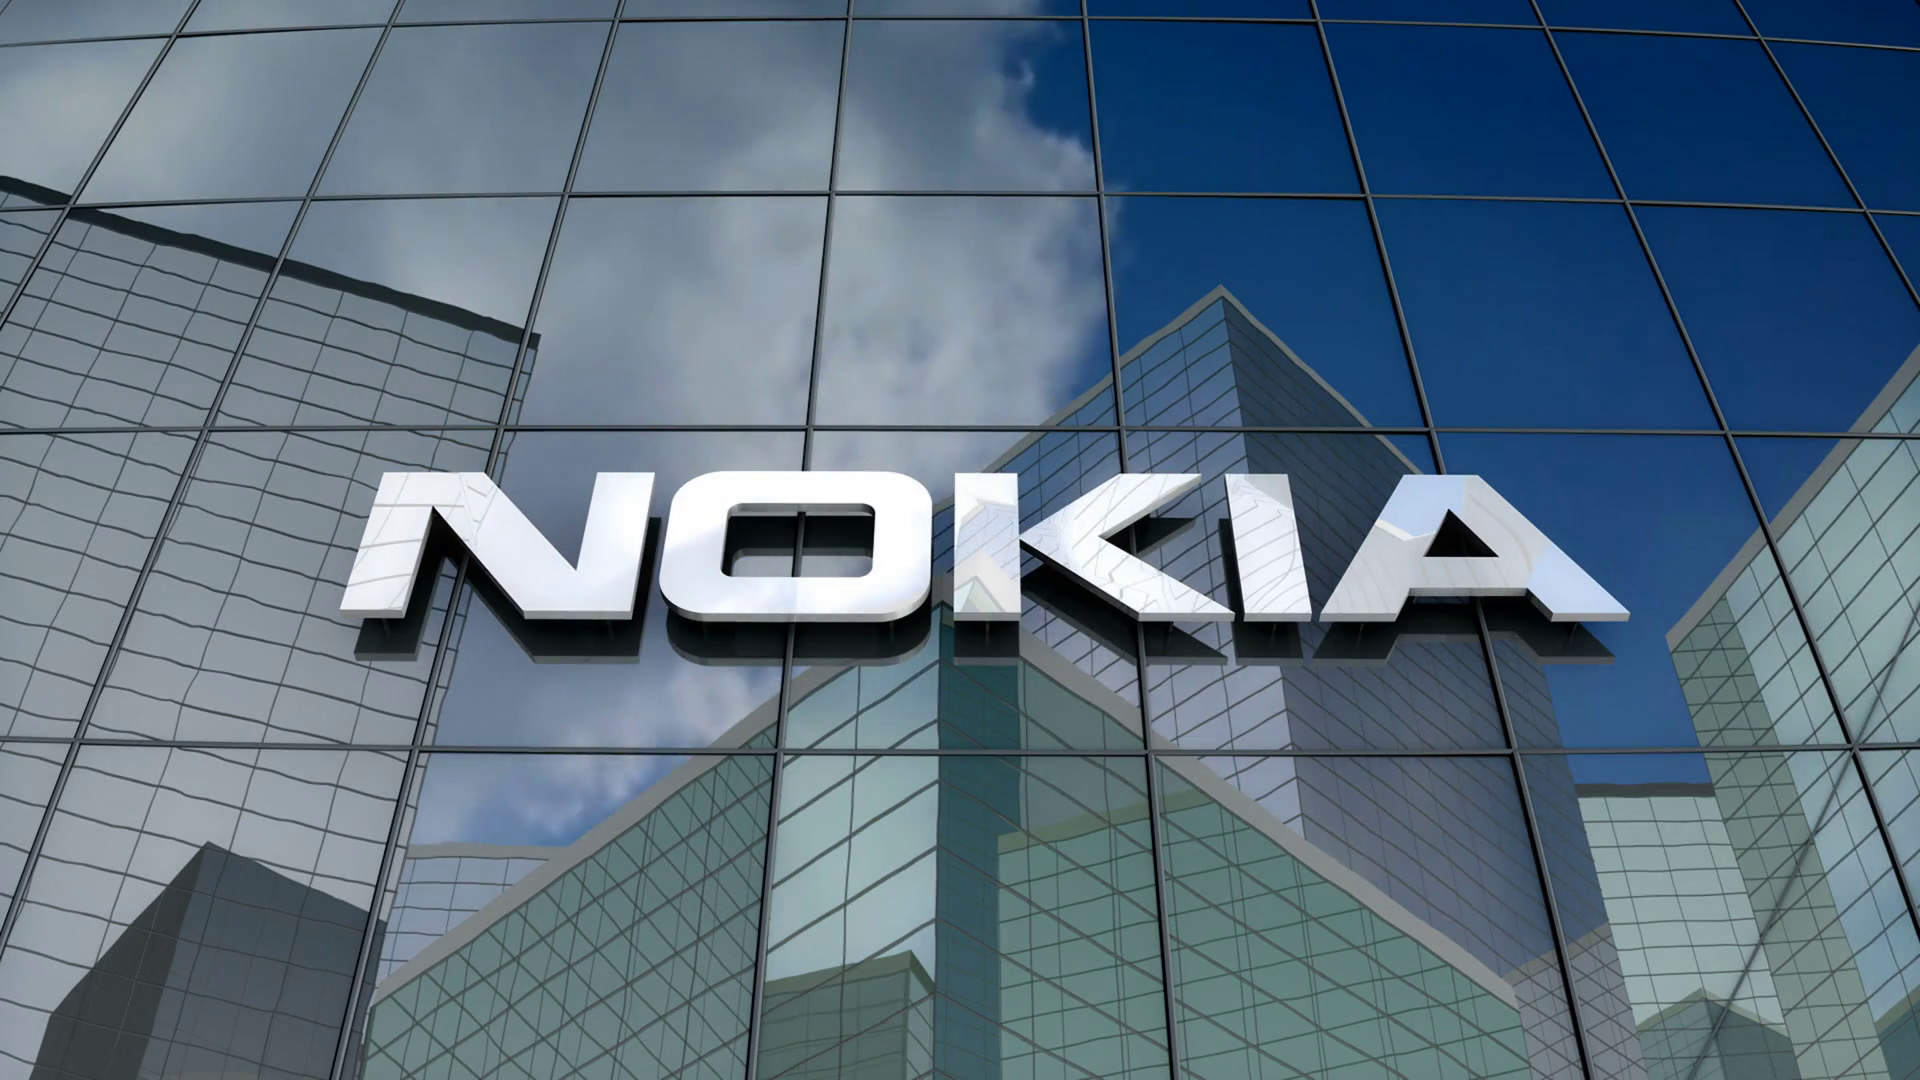 Nokia lebih baik daripada Samsung dalam hal pembaruan Android, menurut sebuah penelitian